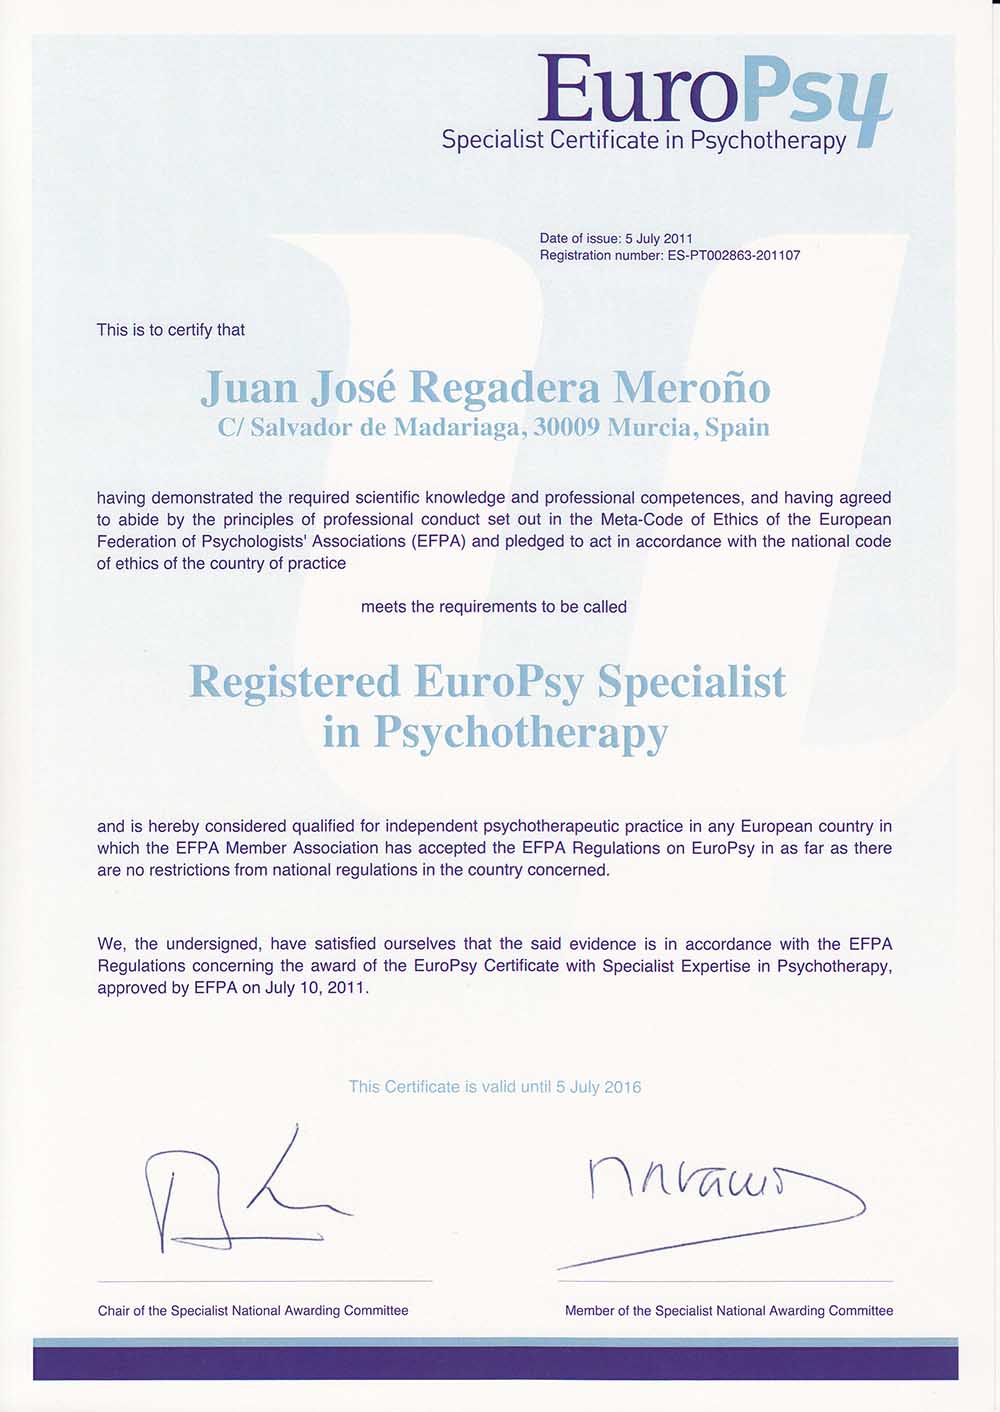 titulo europsy specialist psichoterrapy Dr. Juan José Regadera Meroño